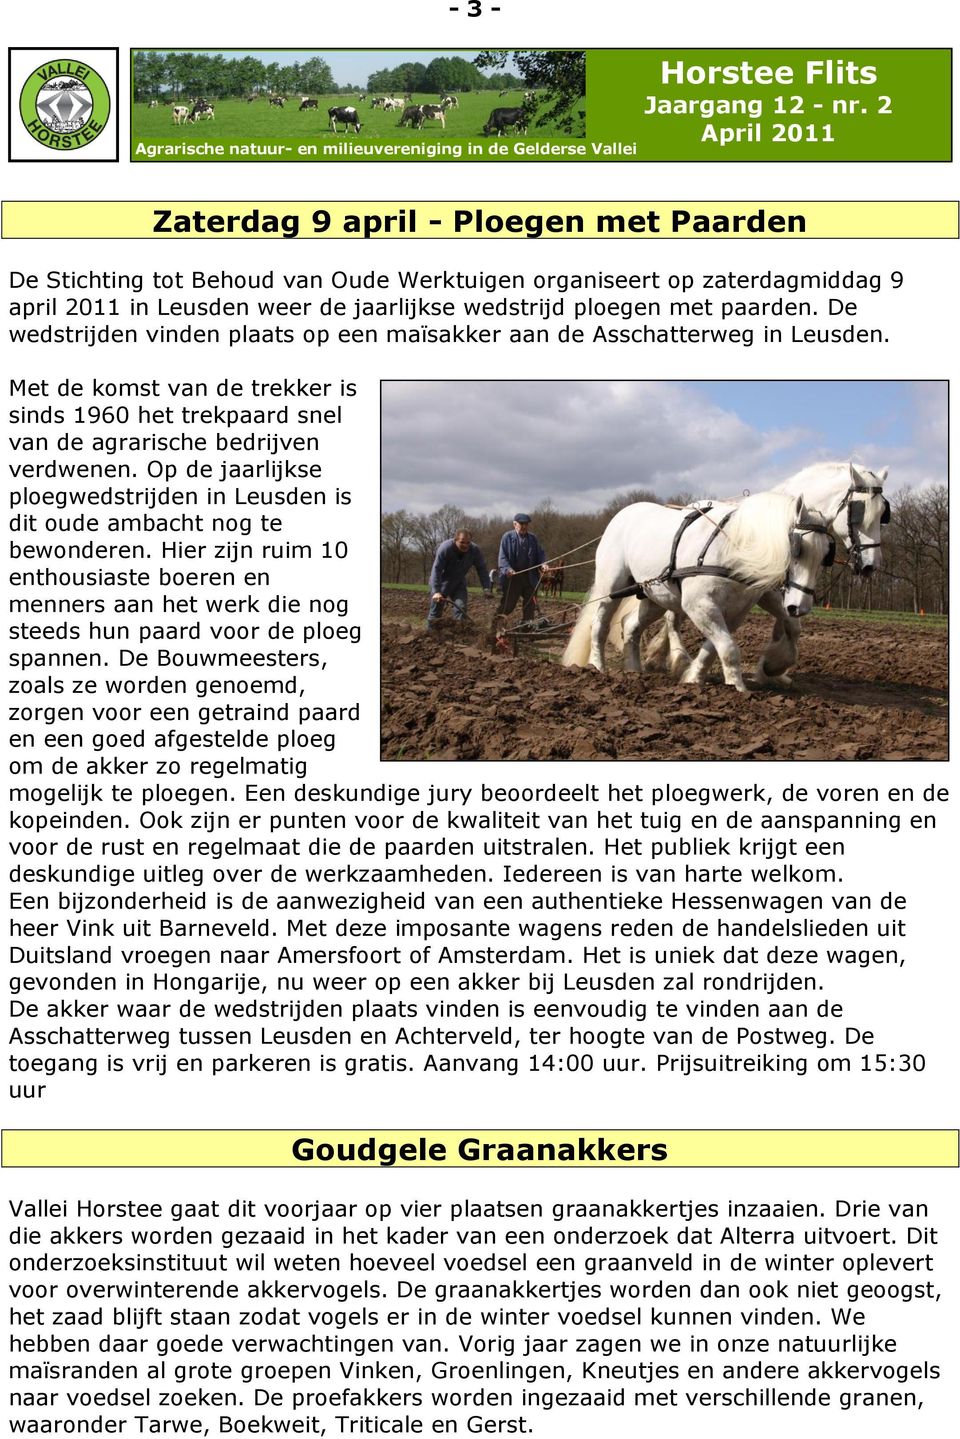 Op de jaarlijkse ploegwedstrijden in Leusden is dit oude ambacht nog te bewonderen. Hier zijn ruim 10 enthousiaste boeren en menners aan het werk die nog steeds hun paard voor de ploeg spannen.